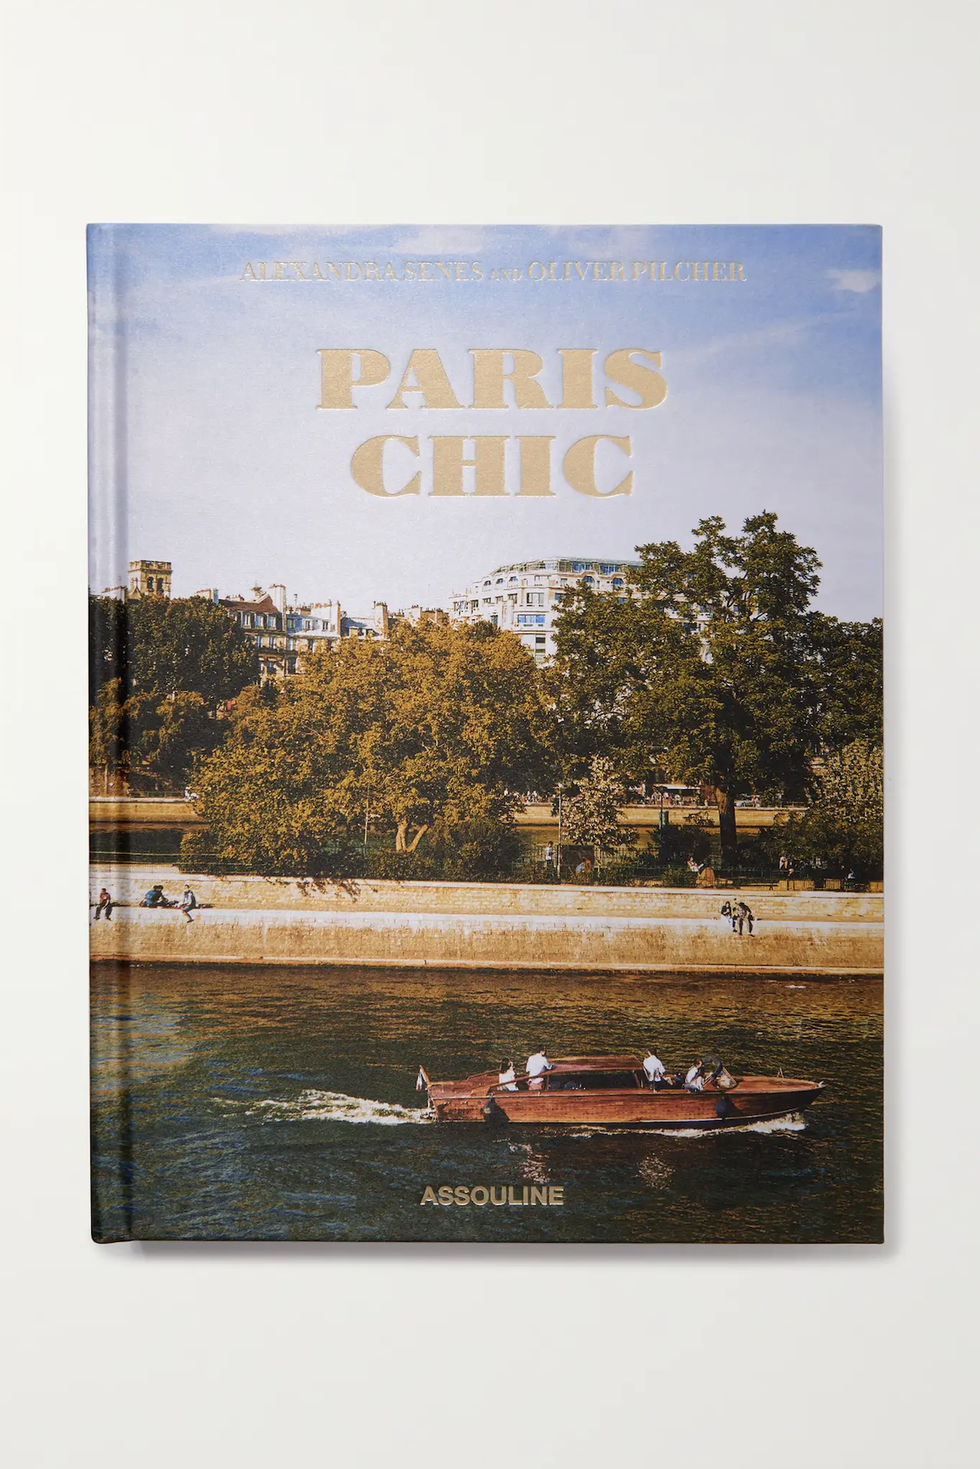 Paris Chic Hardcover Book